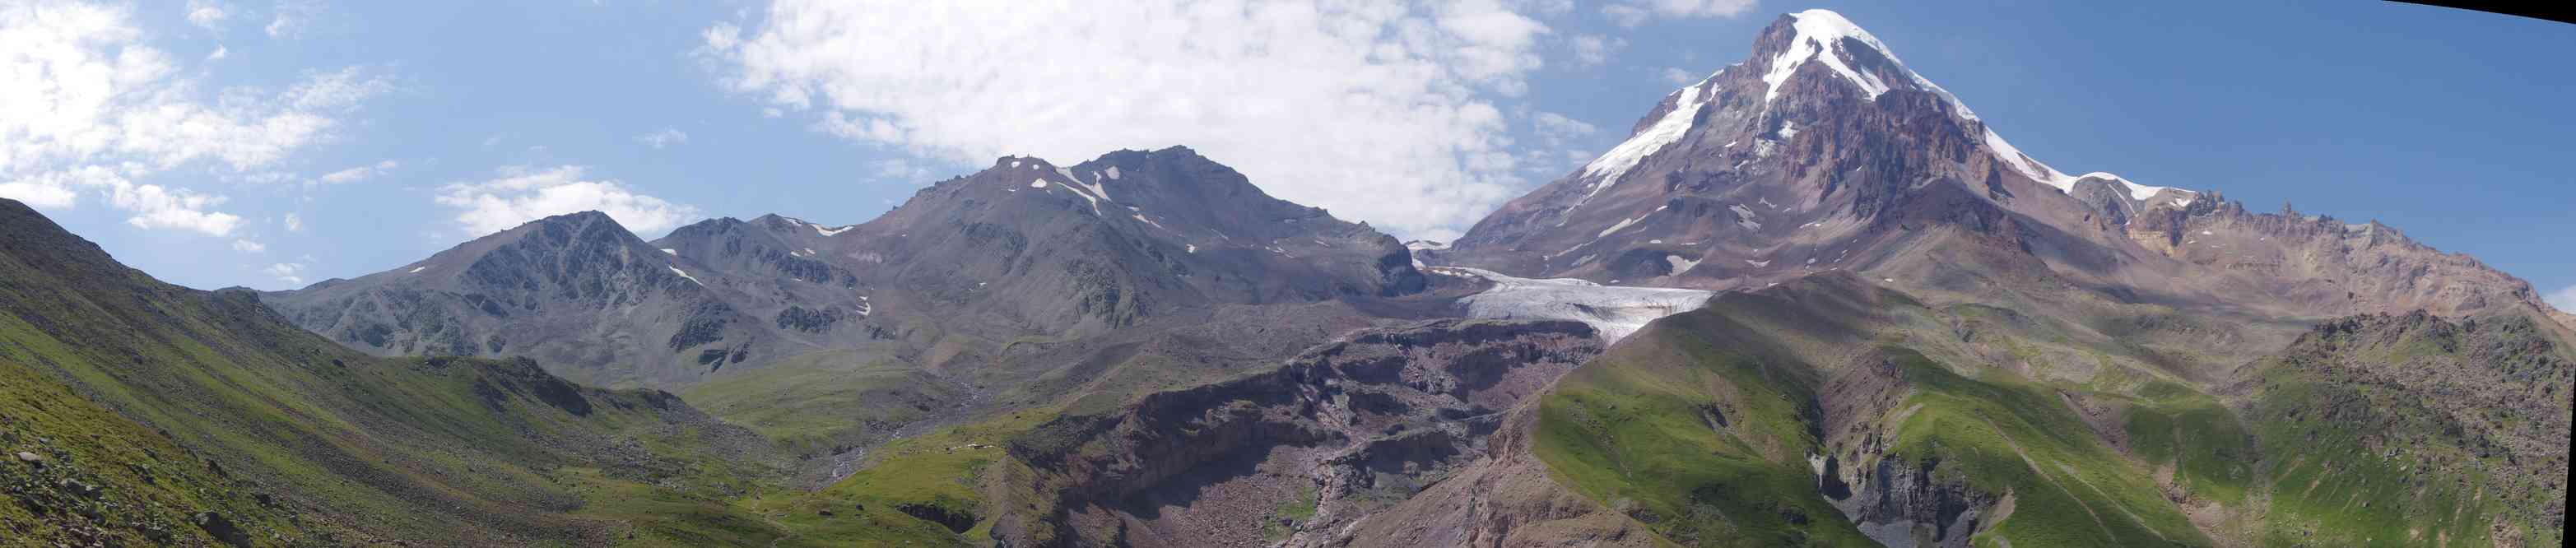 Le mont Kazbek (ყაზბეგი) (5047 m) vu du col d’Arsha (2940 m), le 7 août 2017